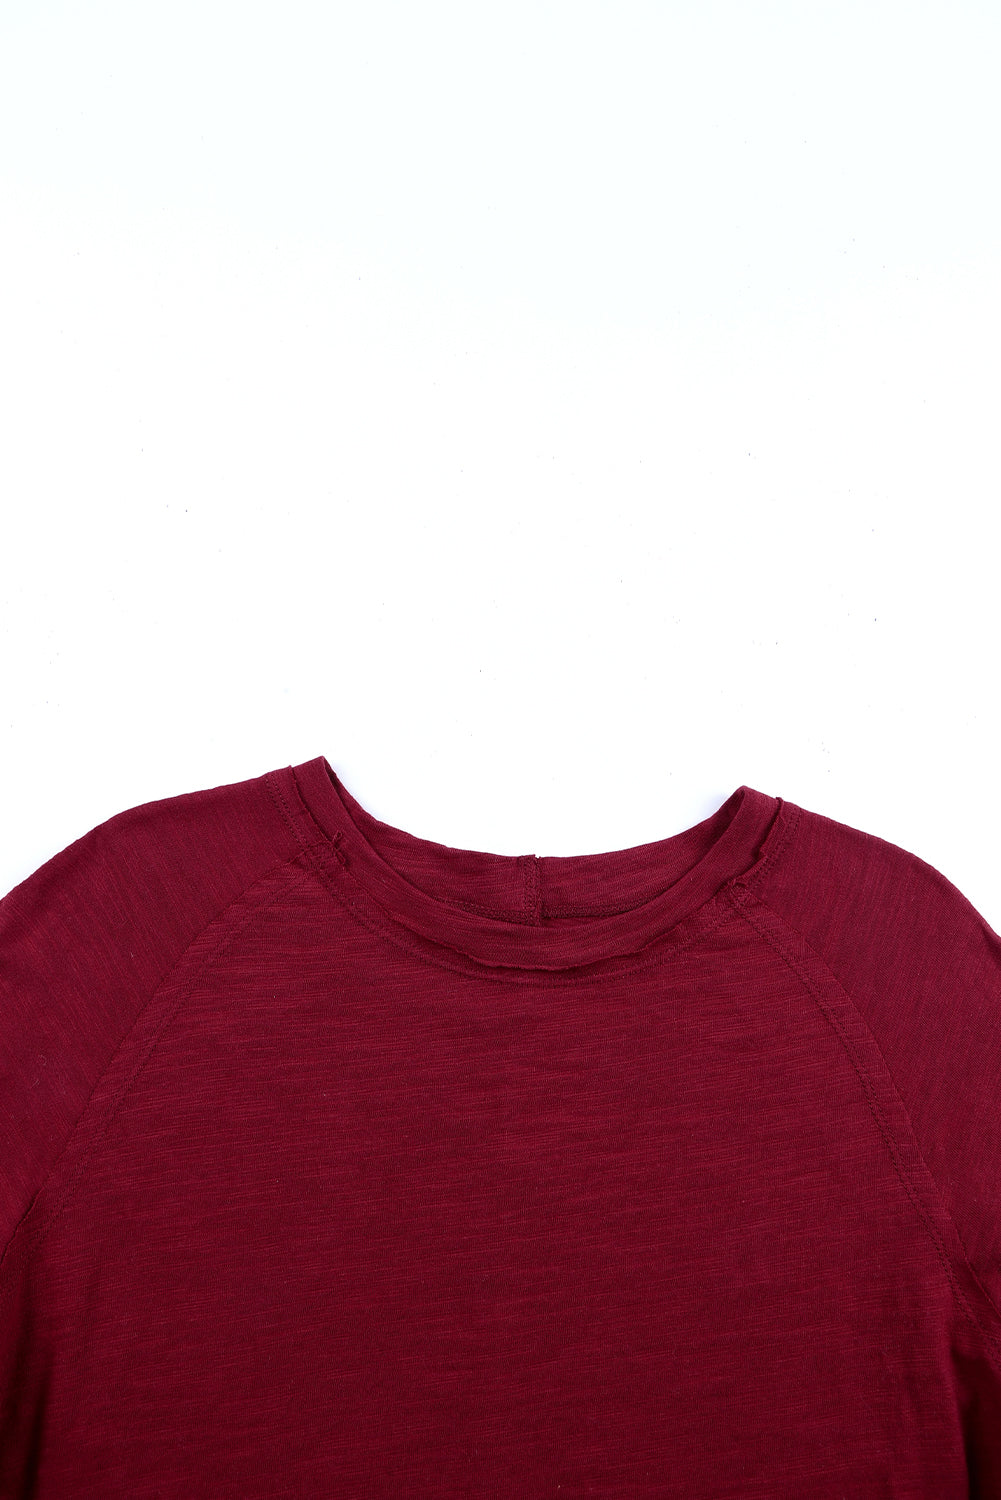 Ognjeno rdeča enobarvna majica z dolgimi rokavi z okroglim izrezom